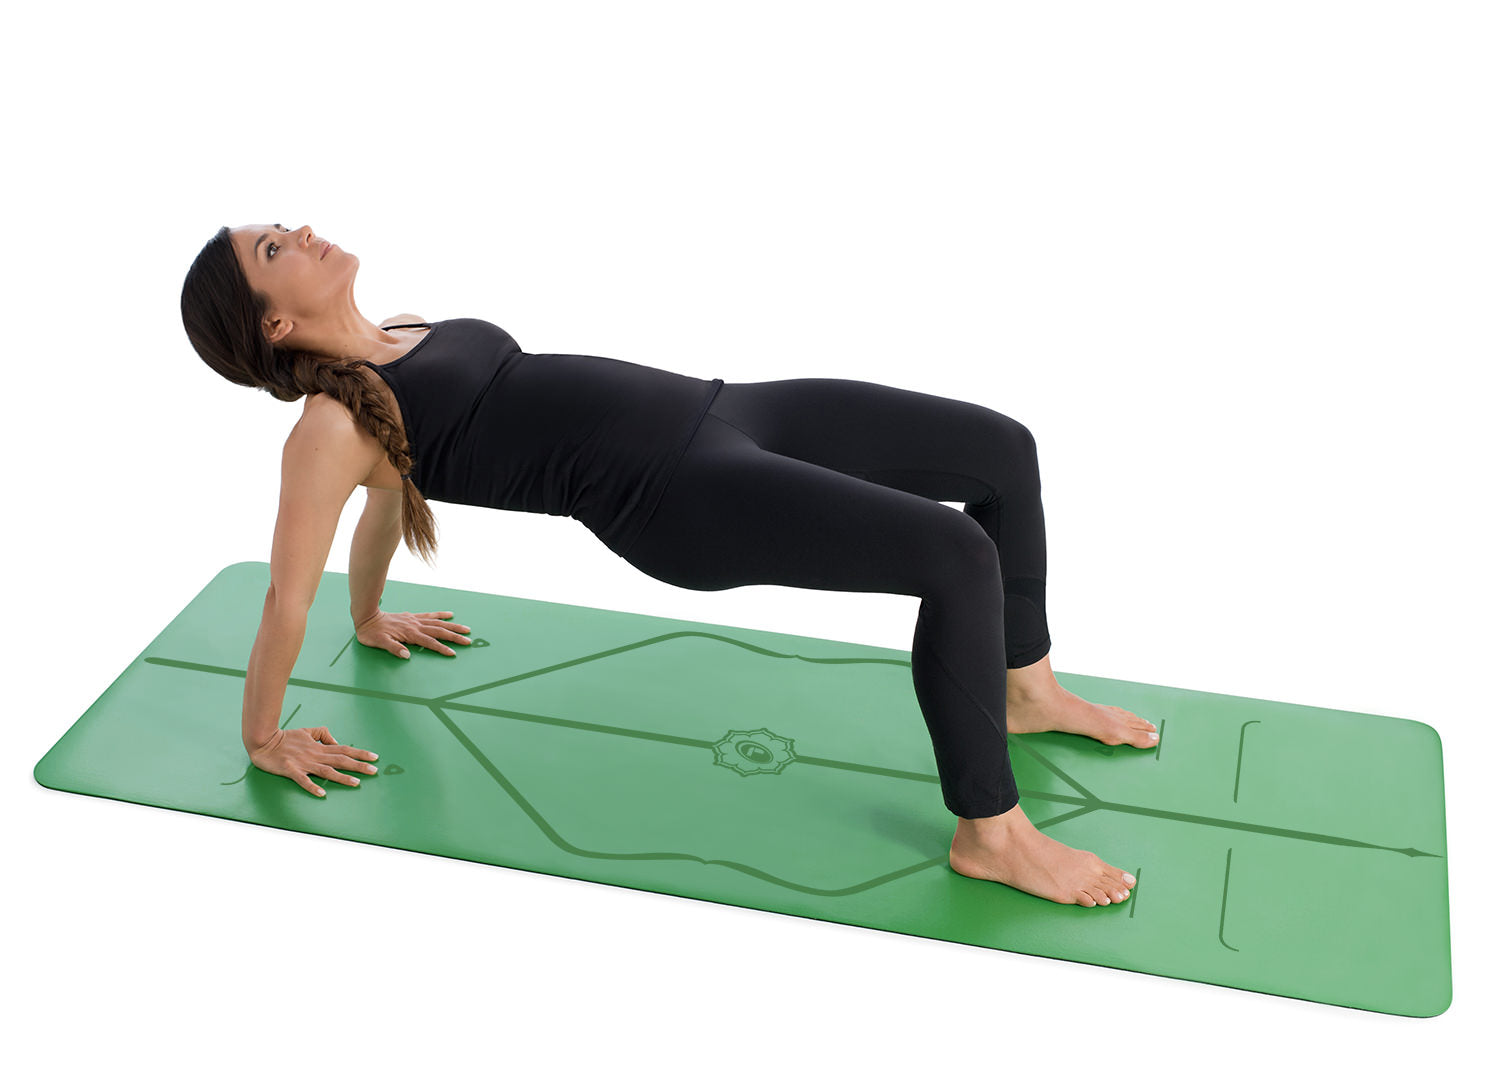 Liforme Original Yoga Mat – Free Yoga Bag Included - Patented